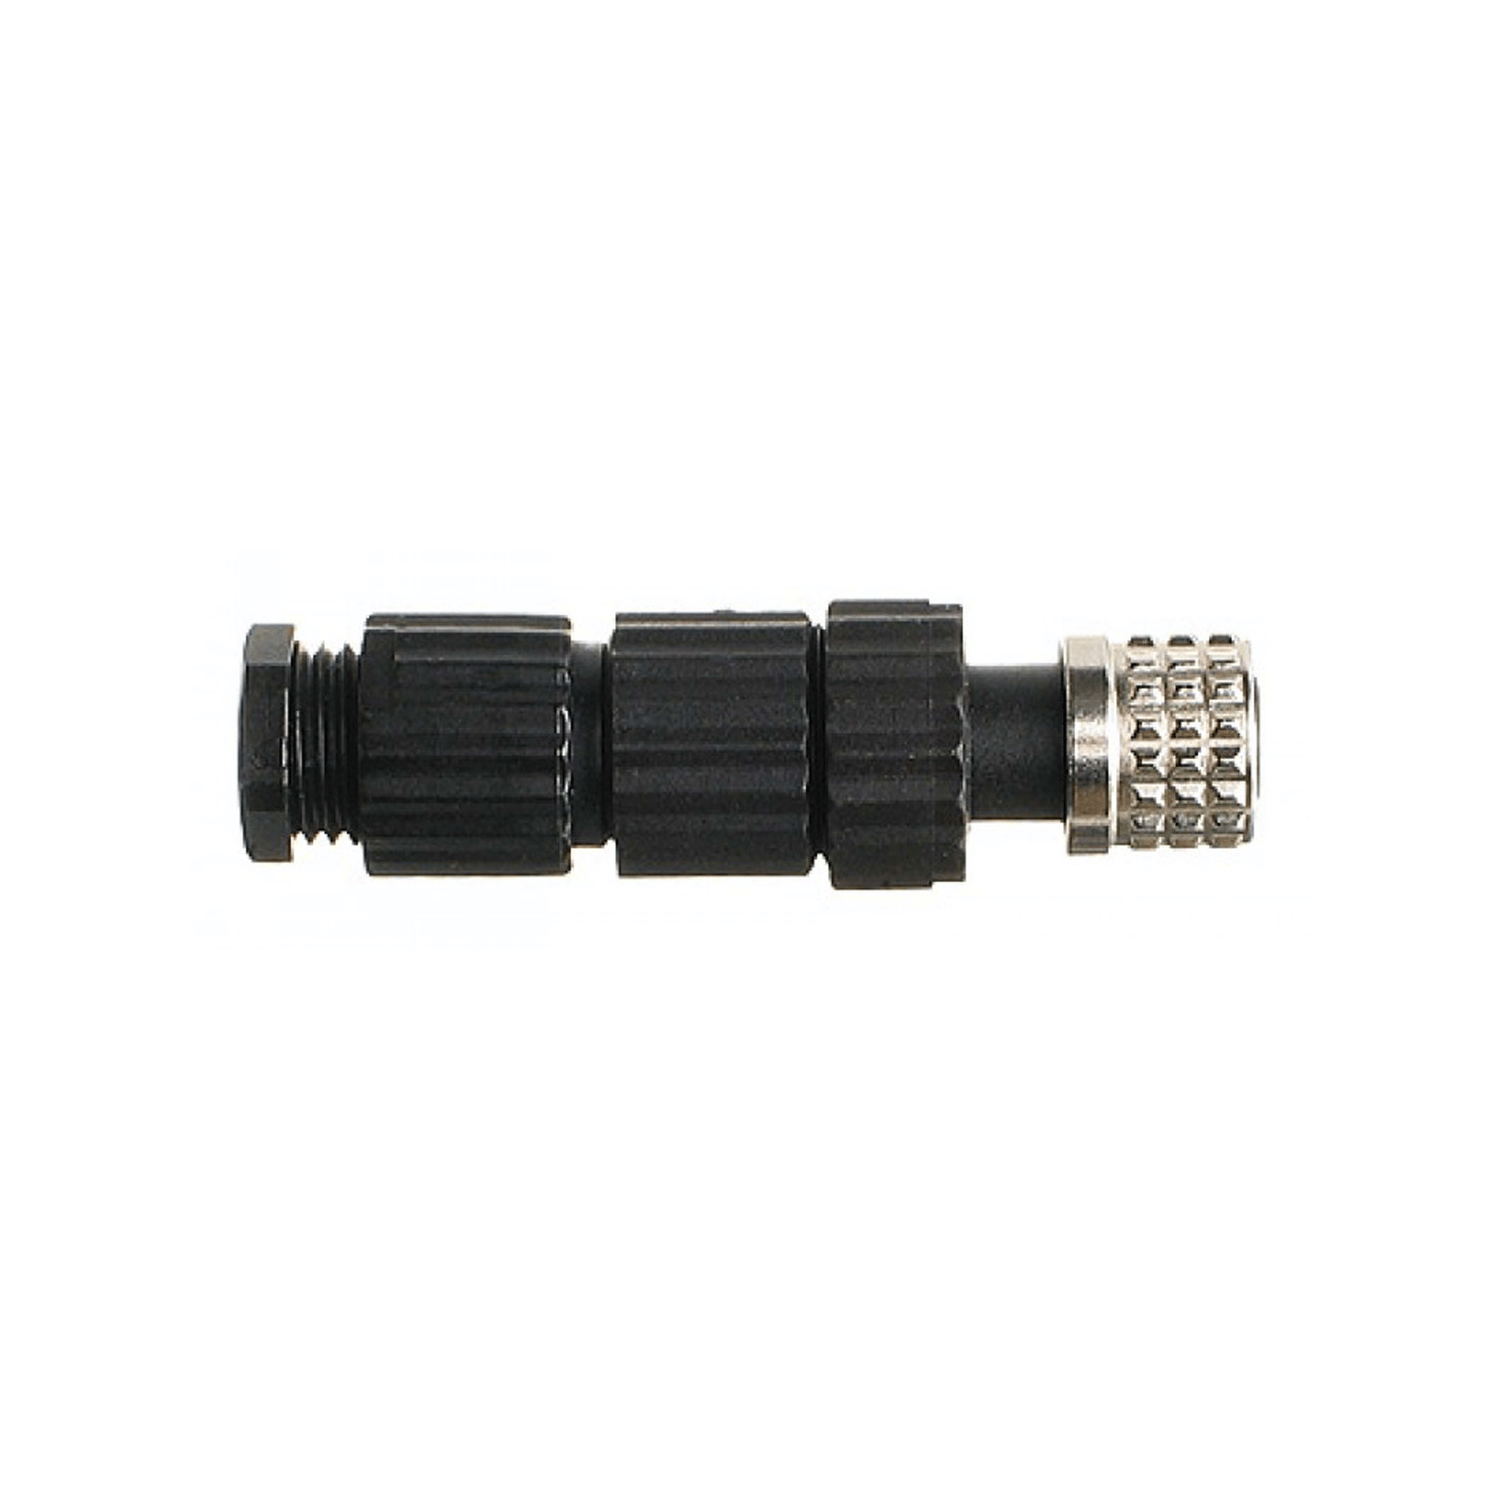 Enchufe SNP02, con protección IP67, conexión a sensor de temperatura.